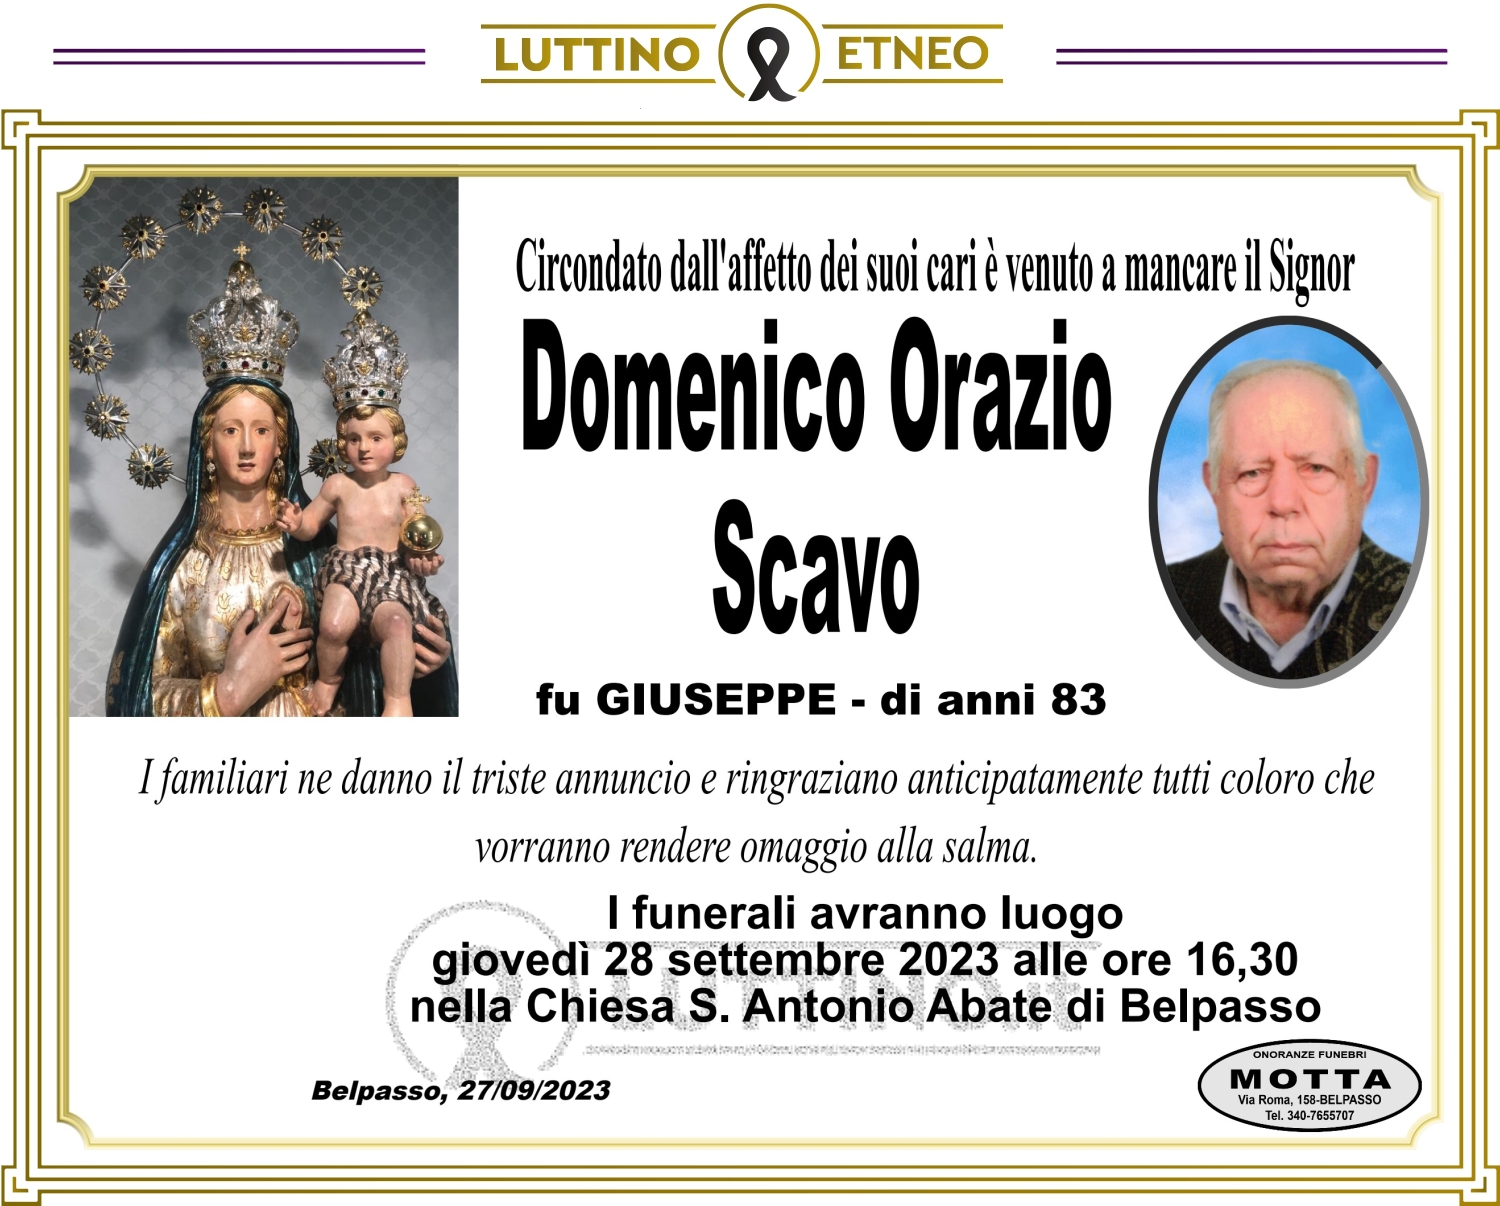 Domenico Orazio Scavo